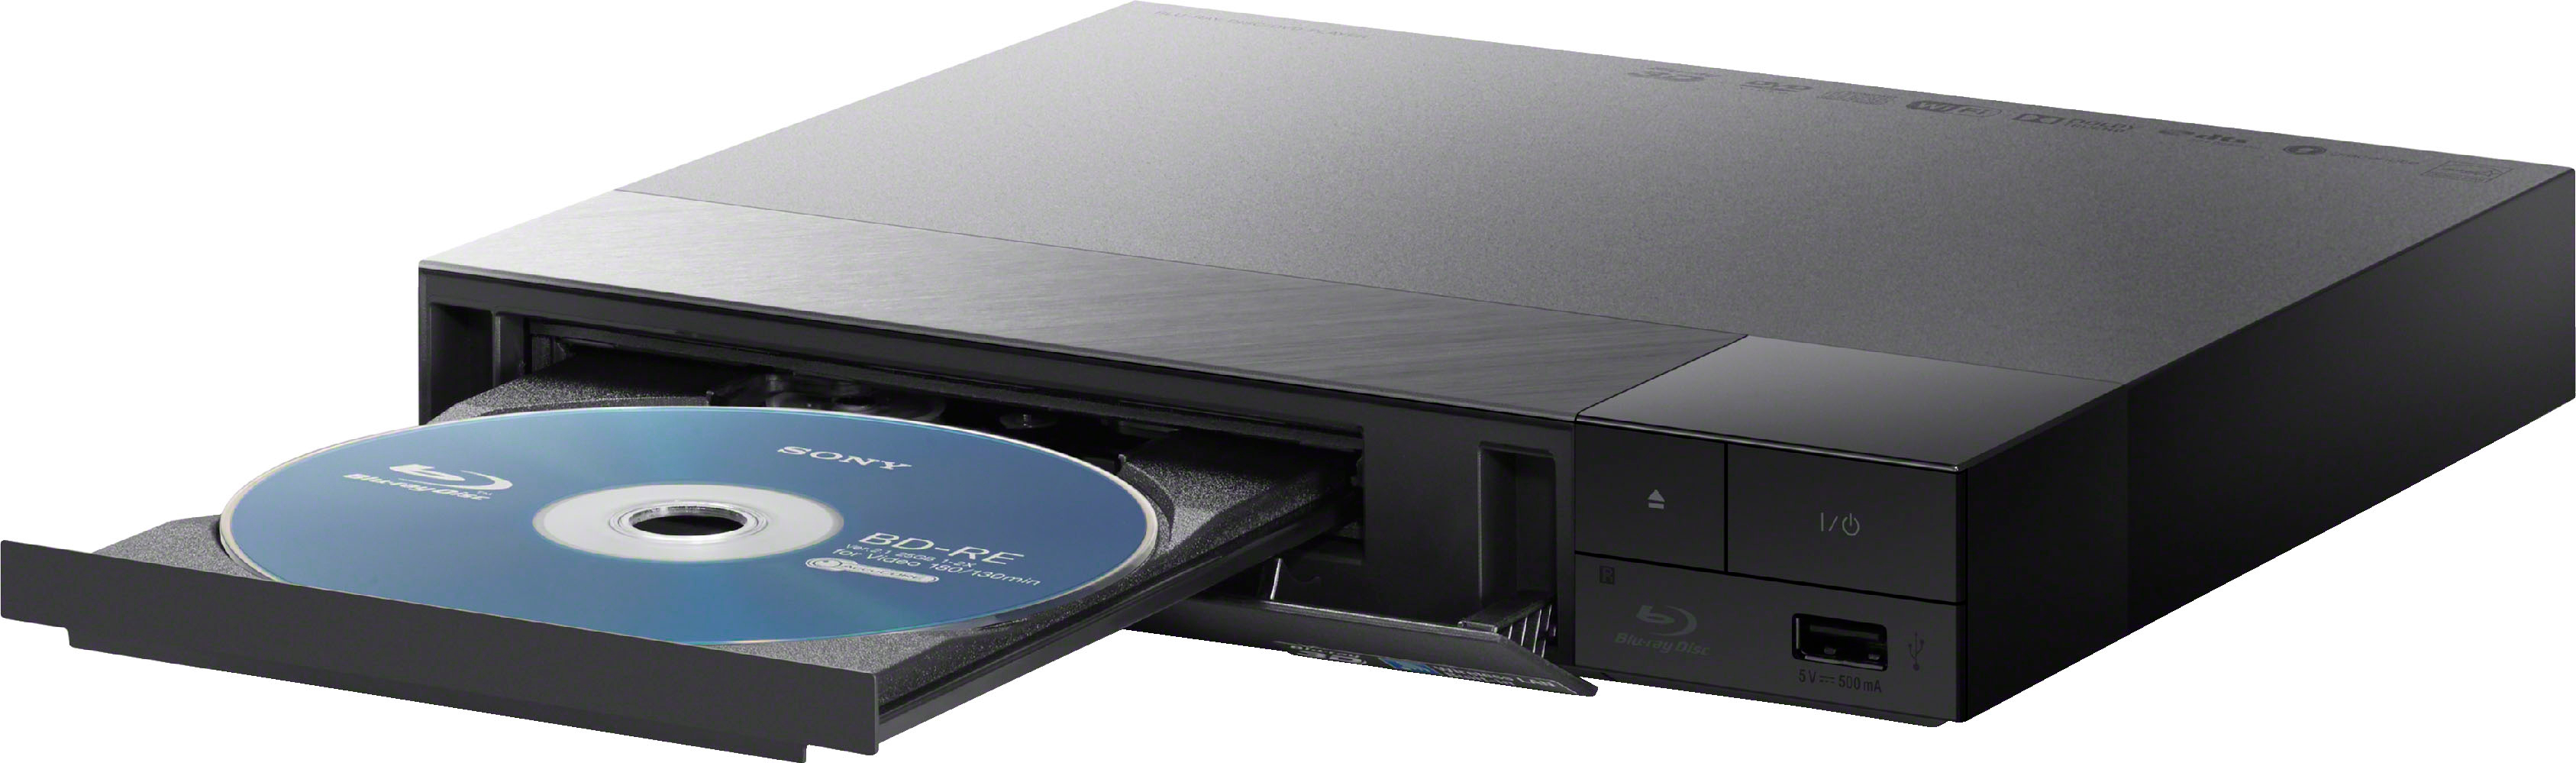 Combiné lecteur DVD Thomson THP370 10 Noir - Lecteur DVD portable